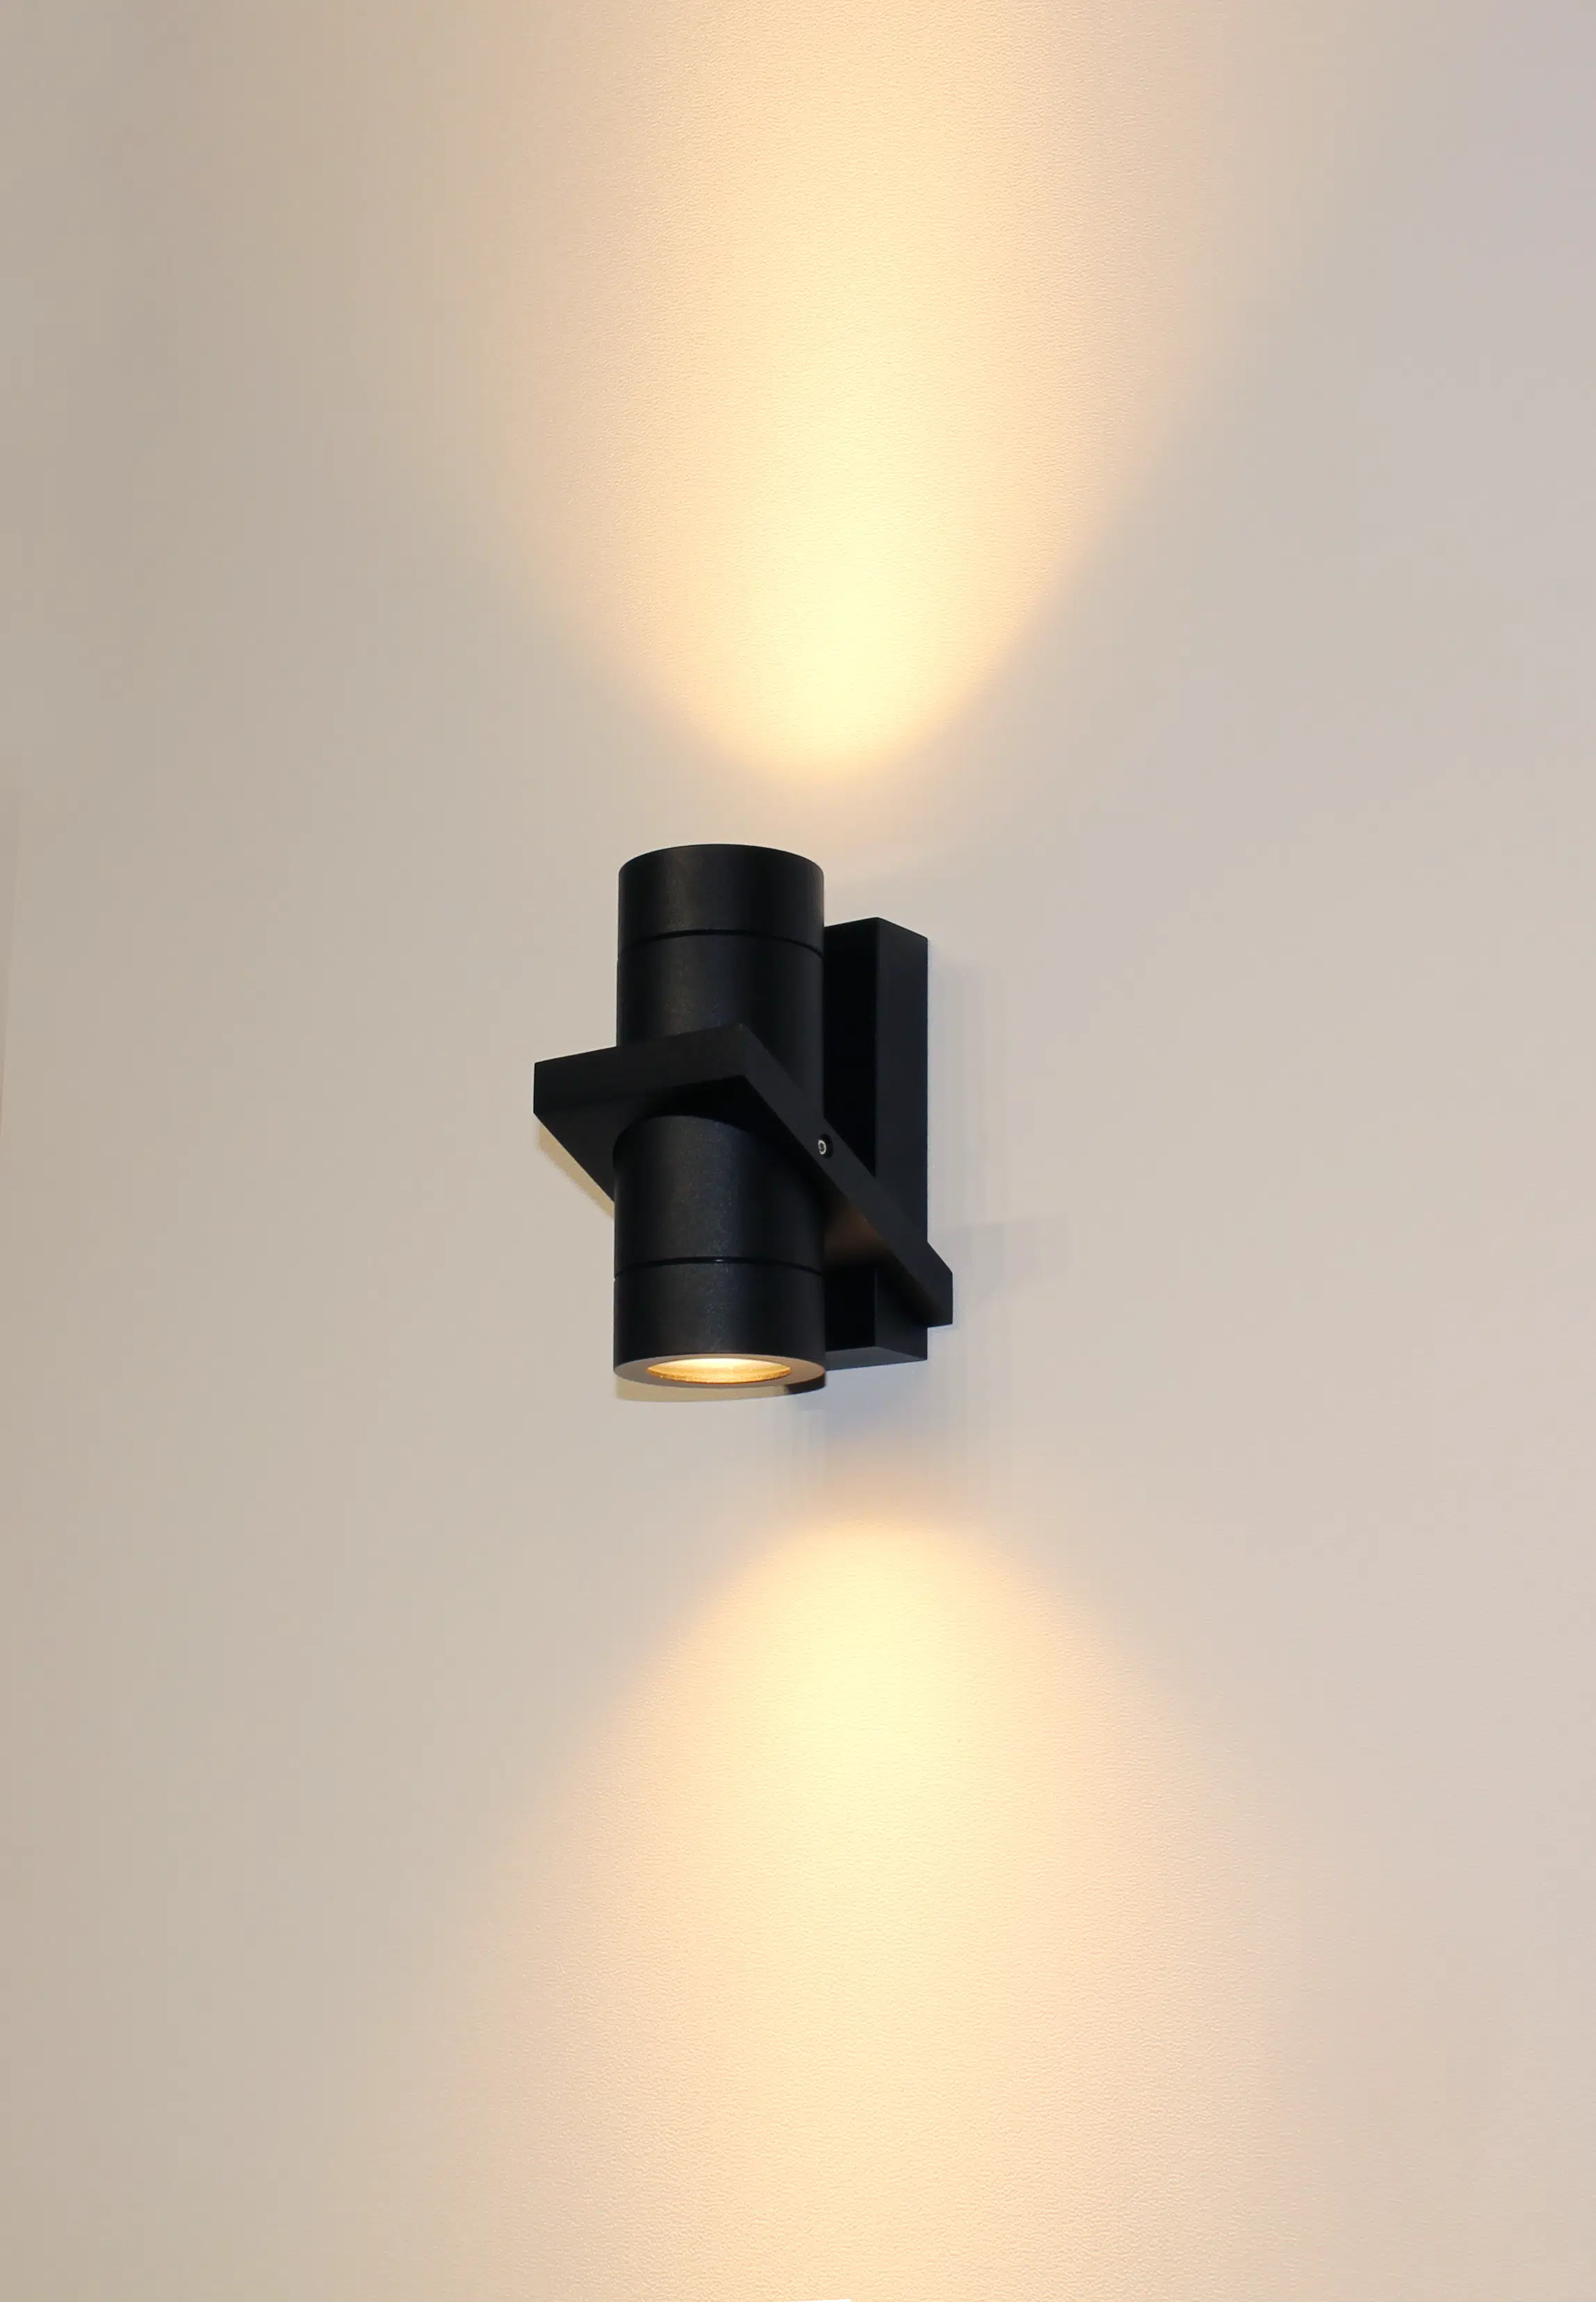 Buitenspot wandlamp Double gu10 zwart up-down light artdelight buitenlampen